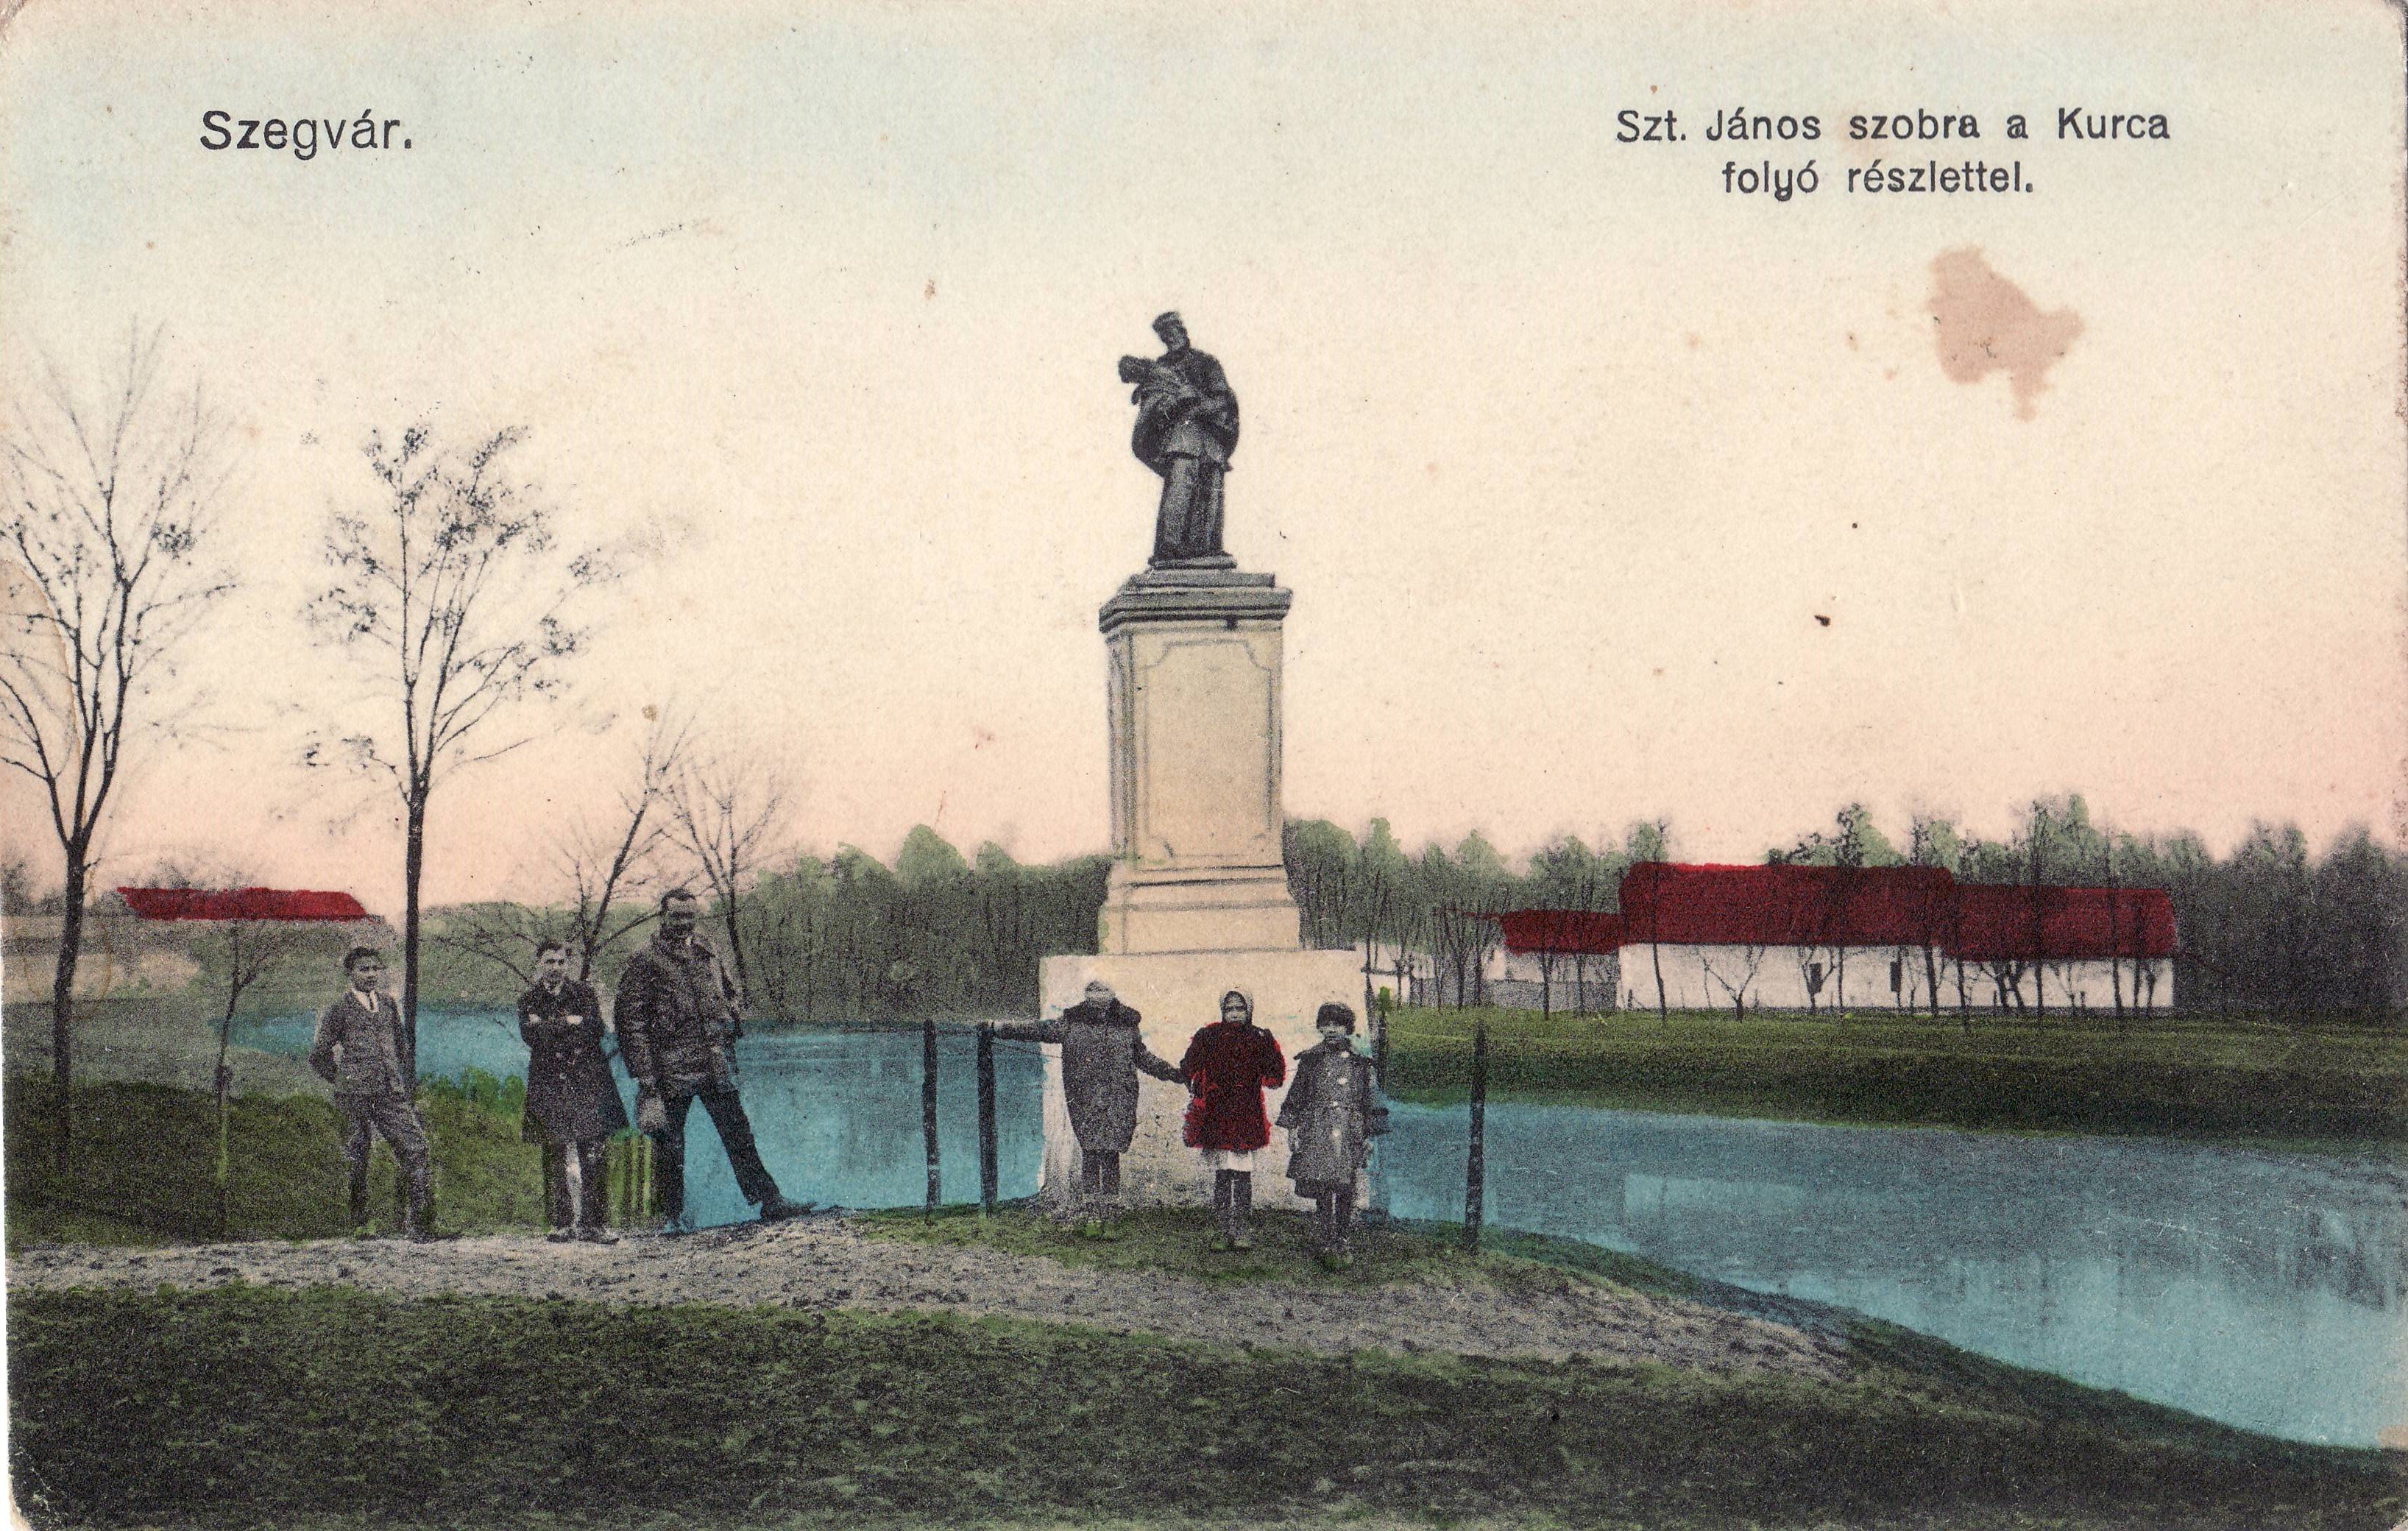 Szegvár – Szt. János szobra a Kurca folyó részlettel (Magyar Környezetvédelmi és Vízügyi Múzeum - Duna Múzeum CC BY-NC-SA)